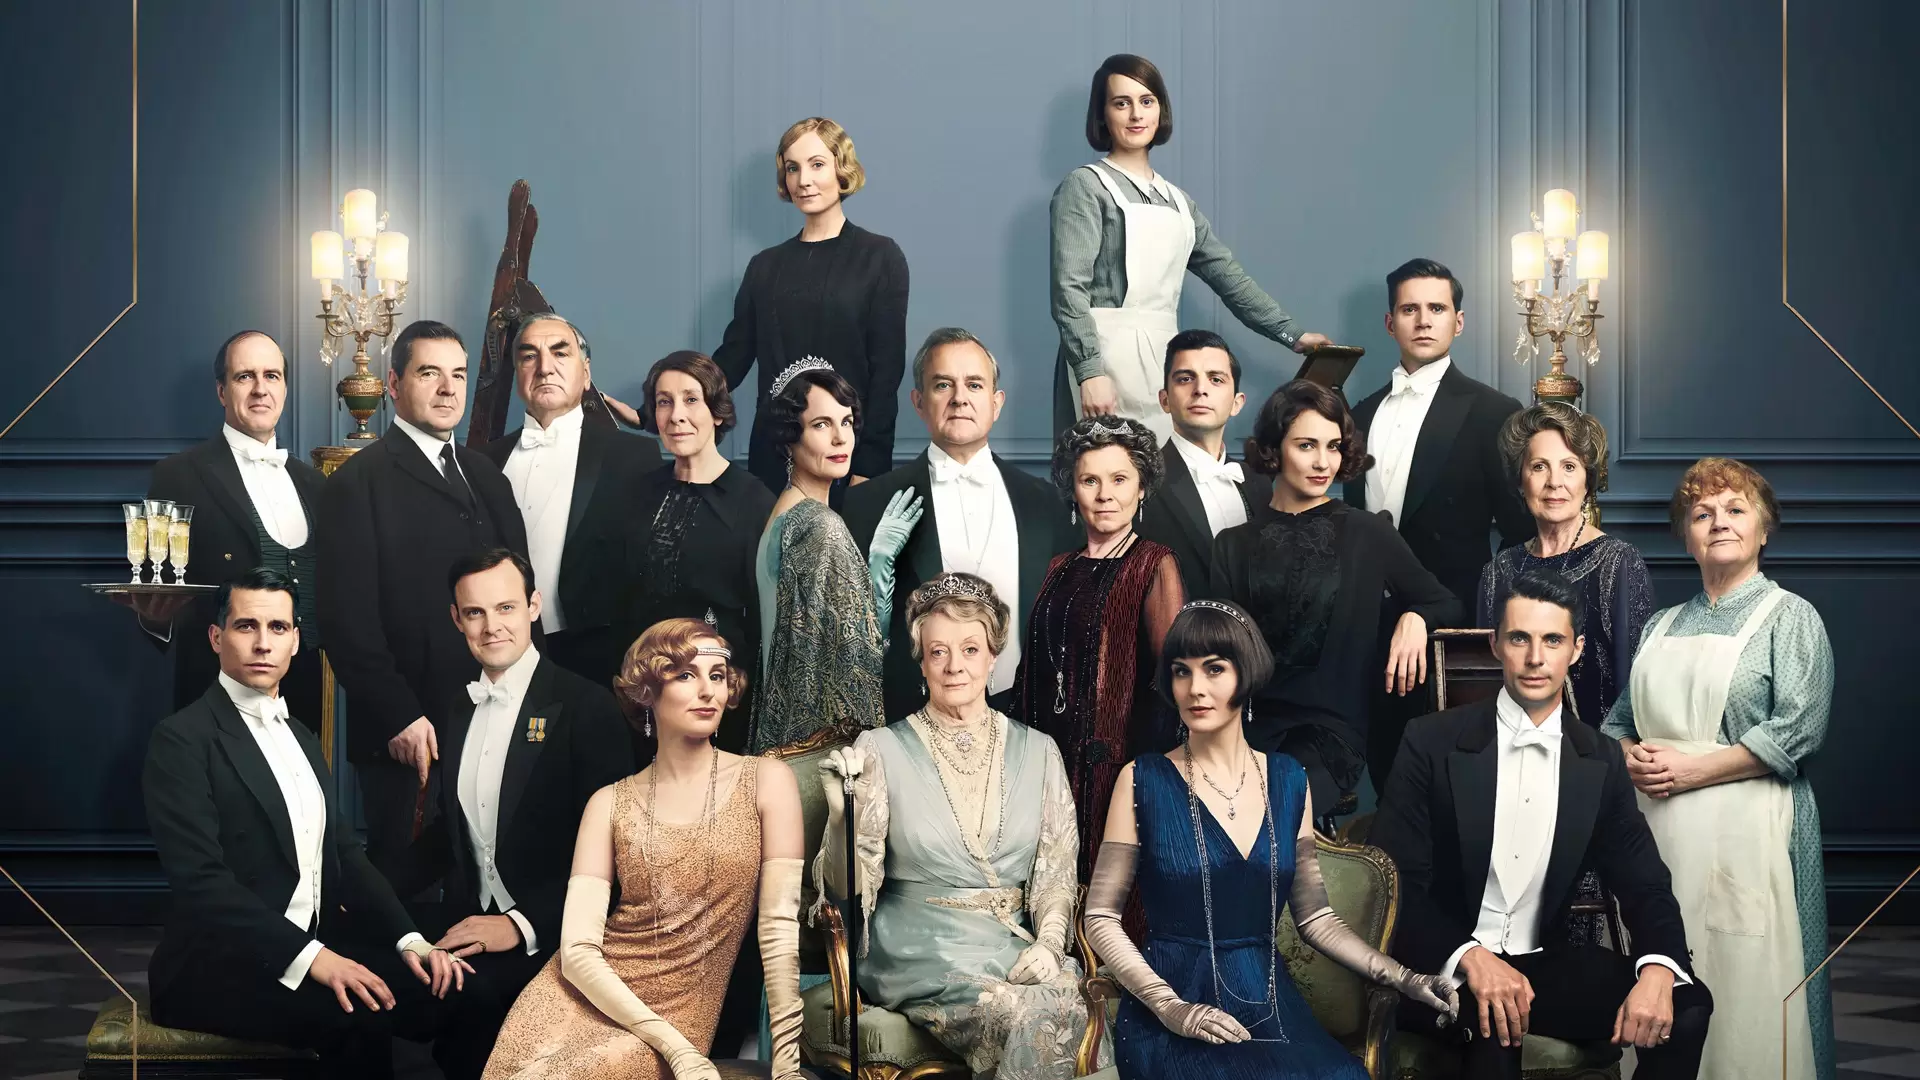 دانلود فیلم Downton Abbey 2019 (دانتون اَبی) با زیرنویس فارسی و تماشای آنلاین